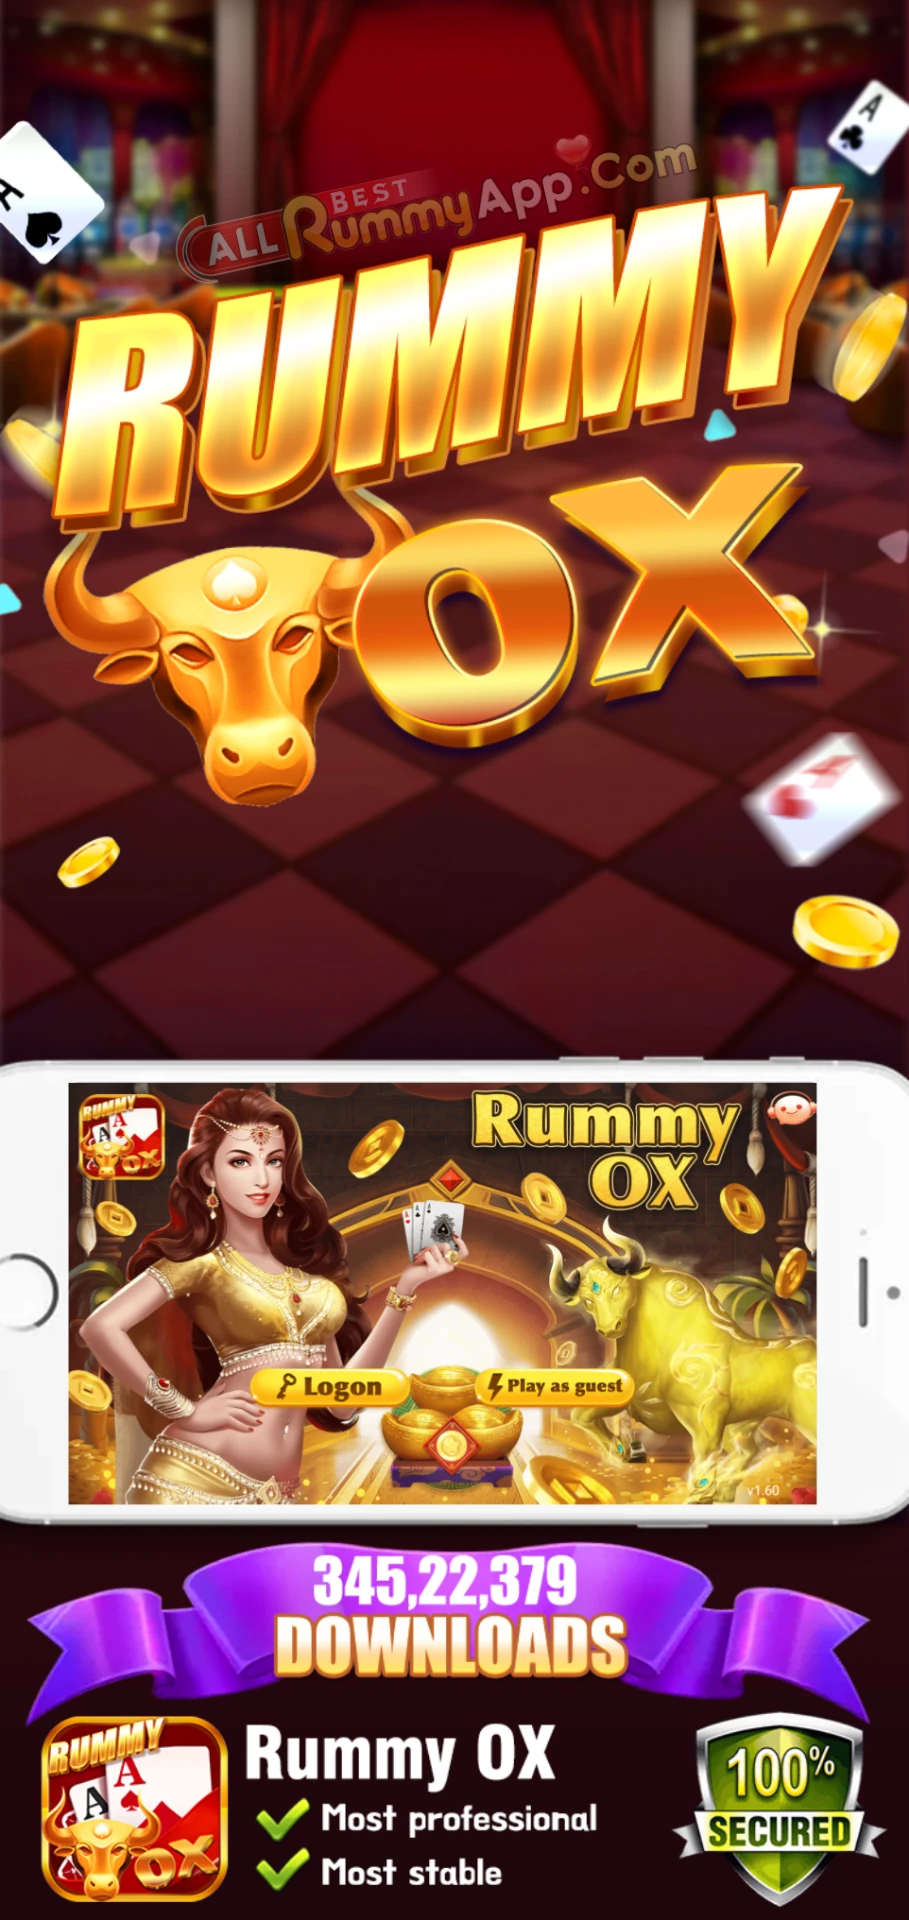 Rummy OX - All Rummy App List